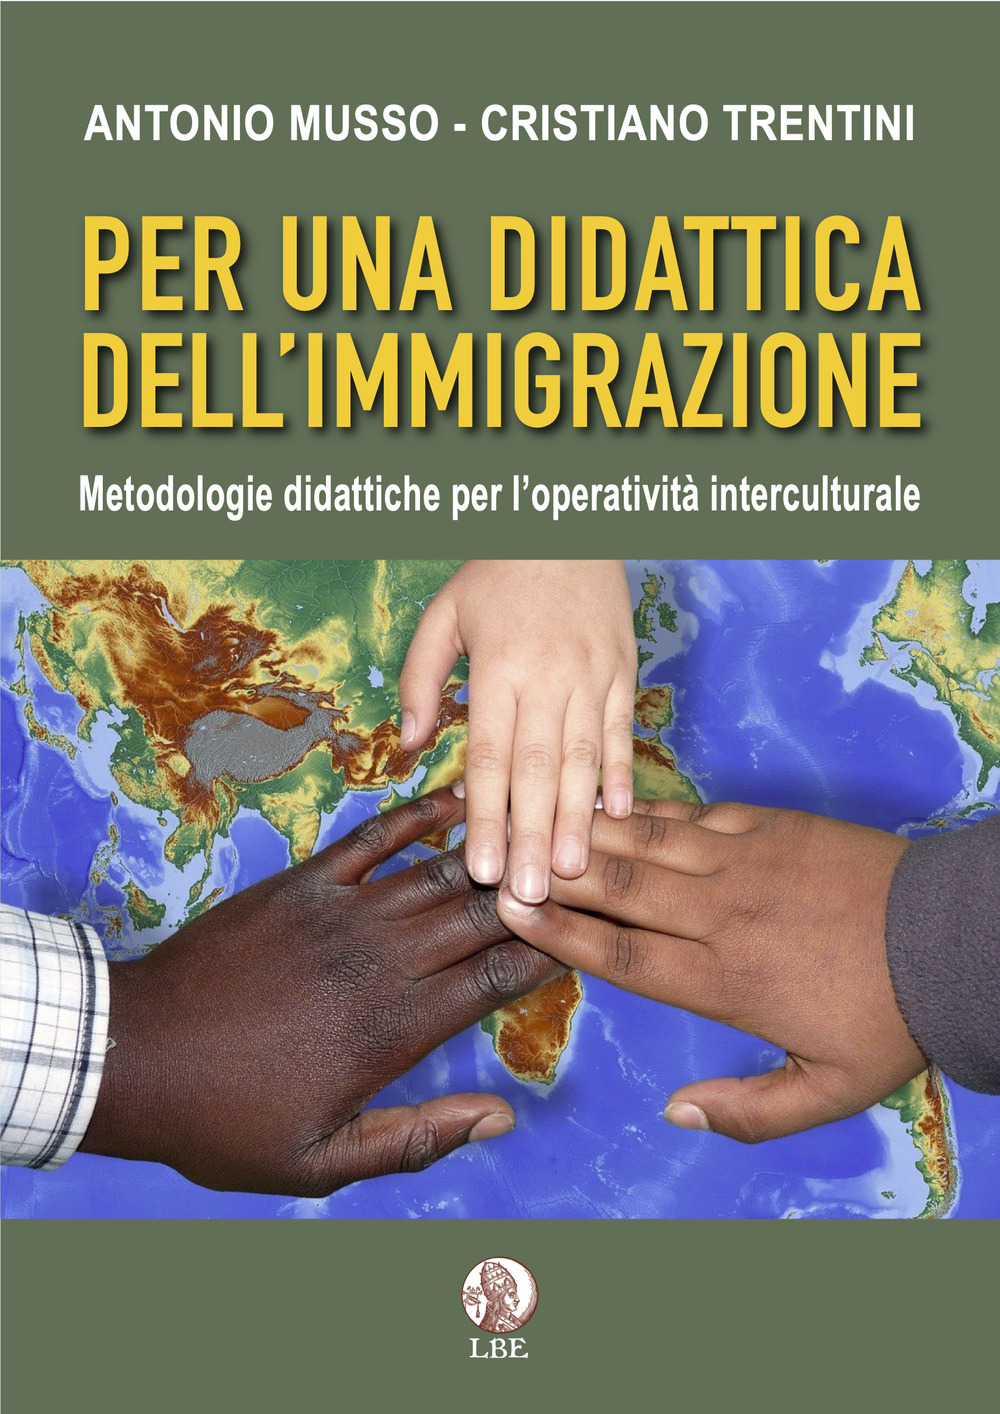 Per una didattica dell'immigrazione. Metodologie didattiche per l'operatività interculturale